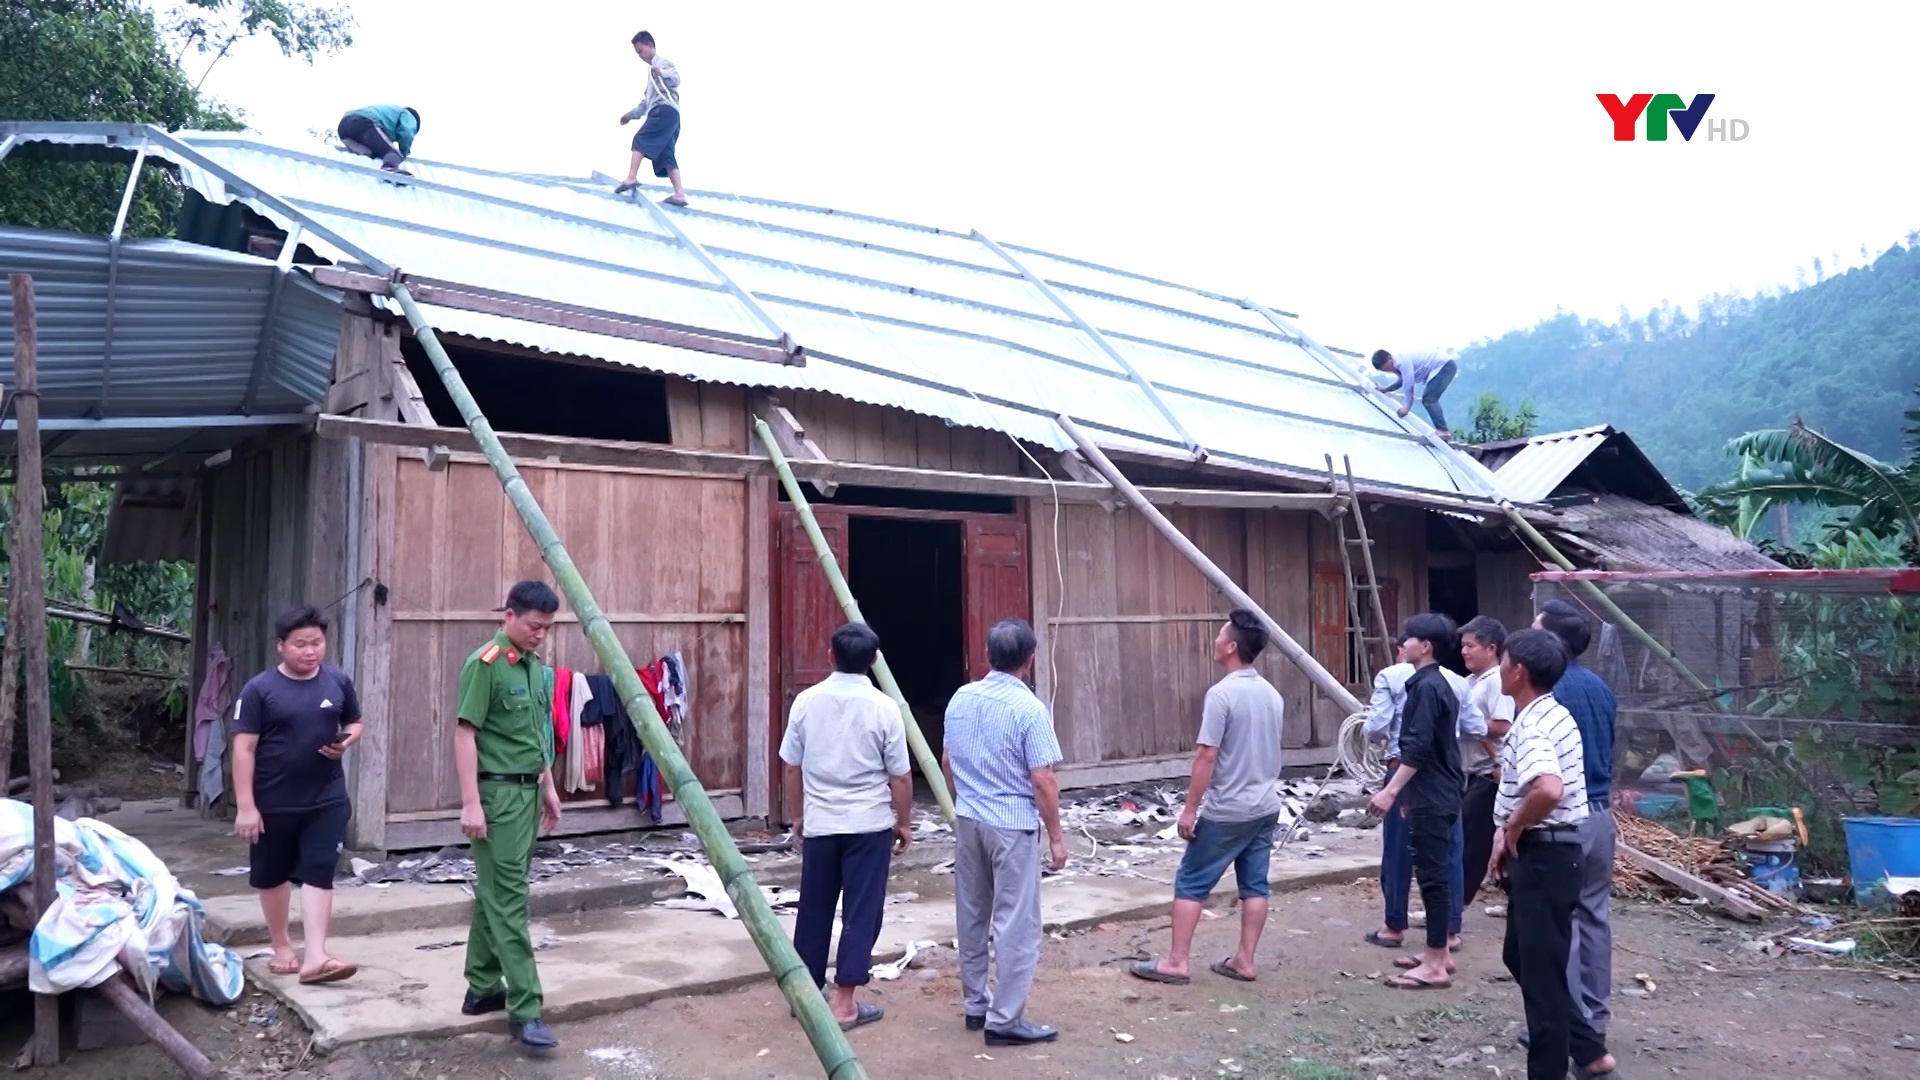 Lãnh đạo huyện Trấn Yên chỉ đạo khắc phục hậu quả dông lốc và thăm hỏi các gia đình bị thiệt hại